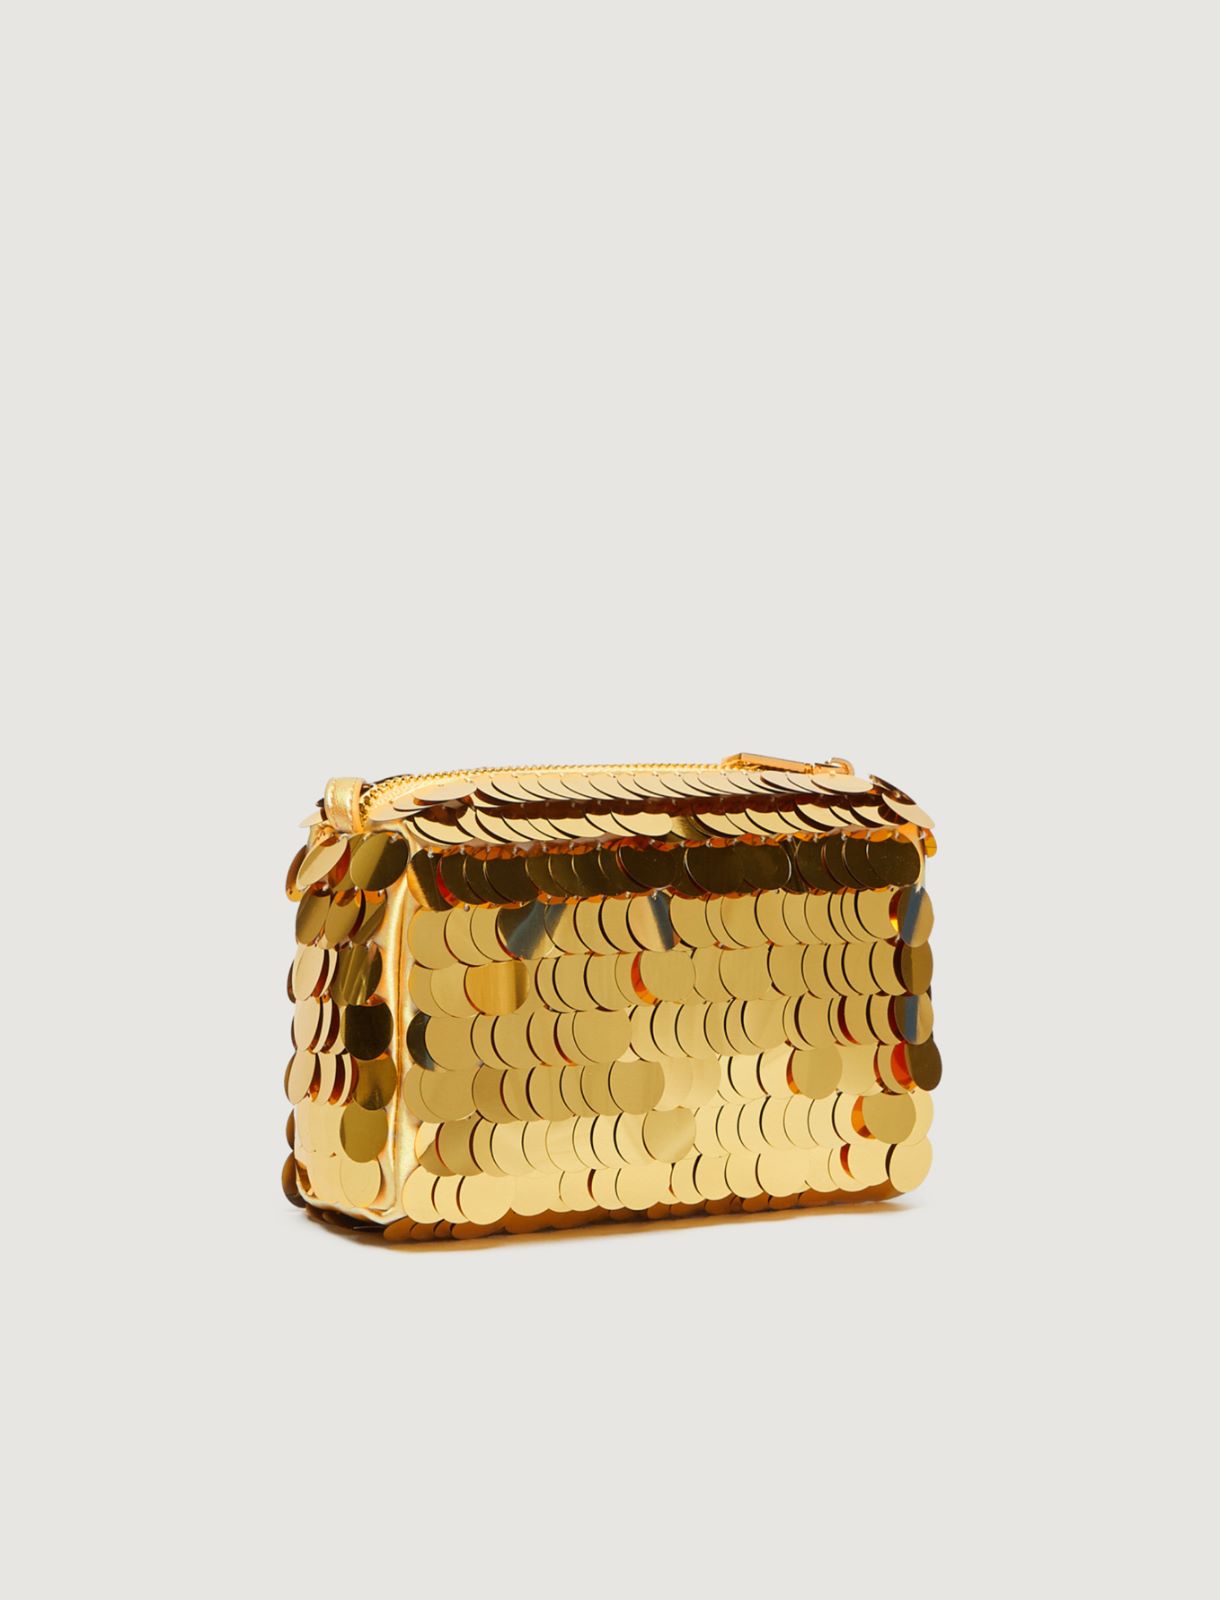 Small bag - Gold - Marina Rinaldi - 2